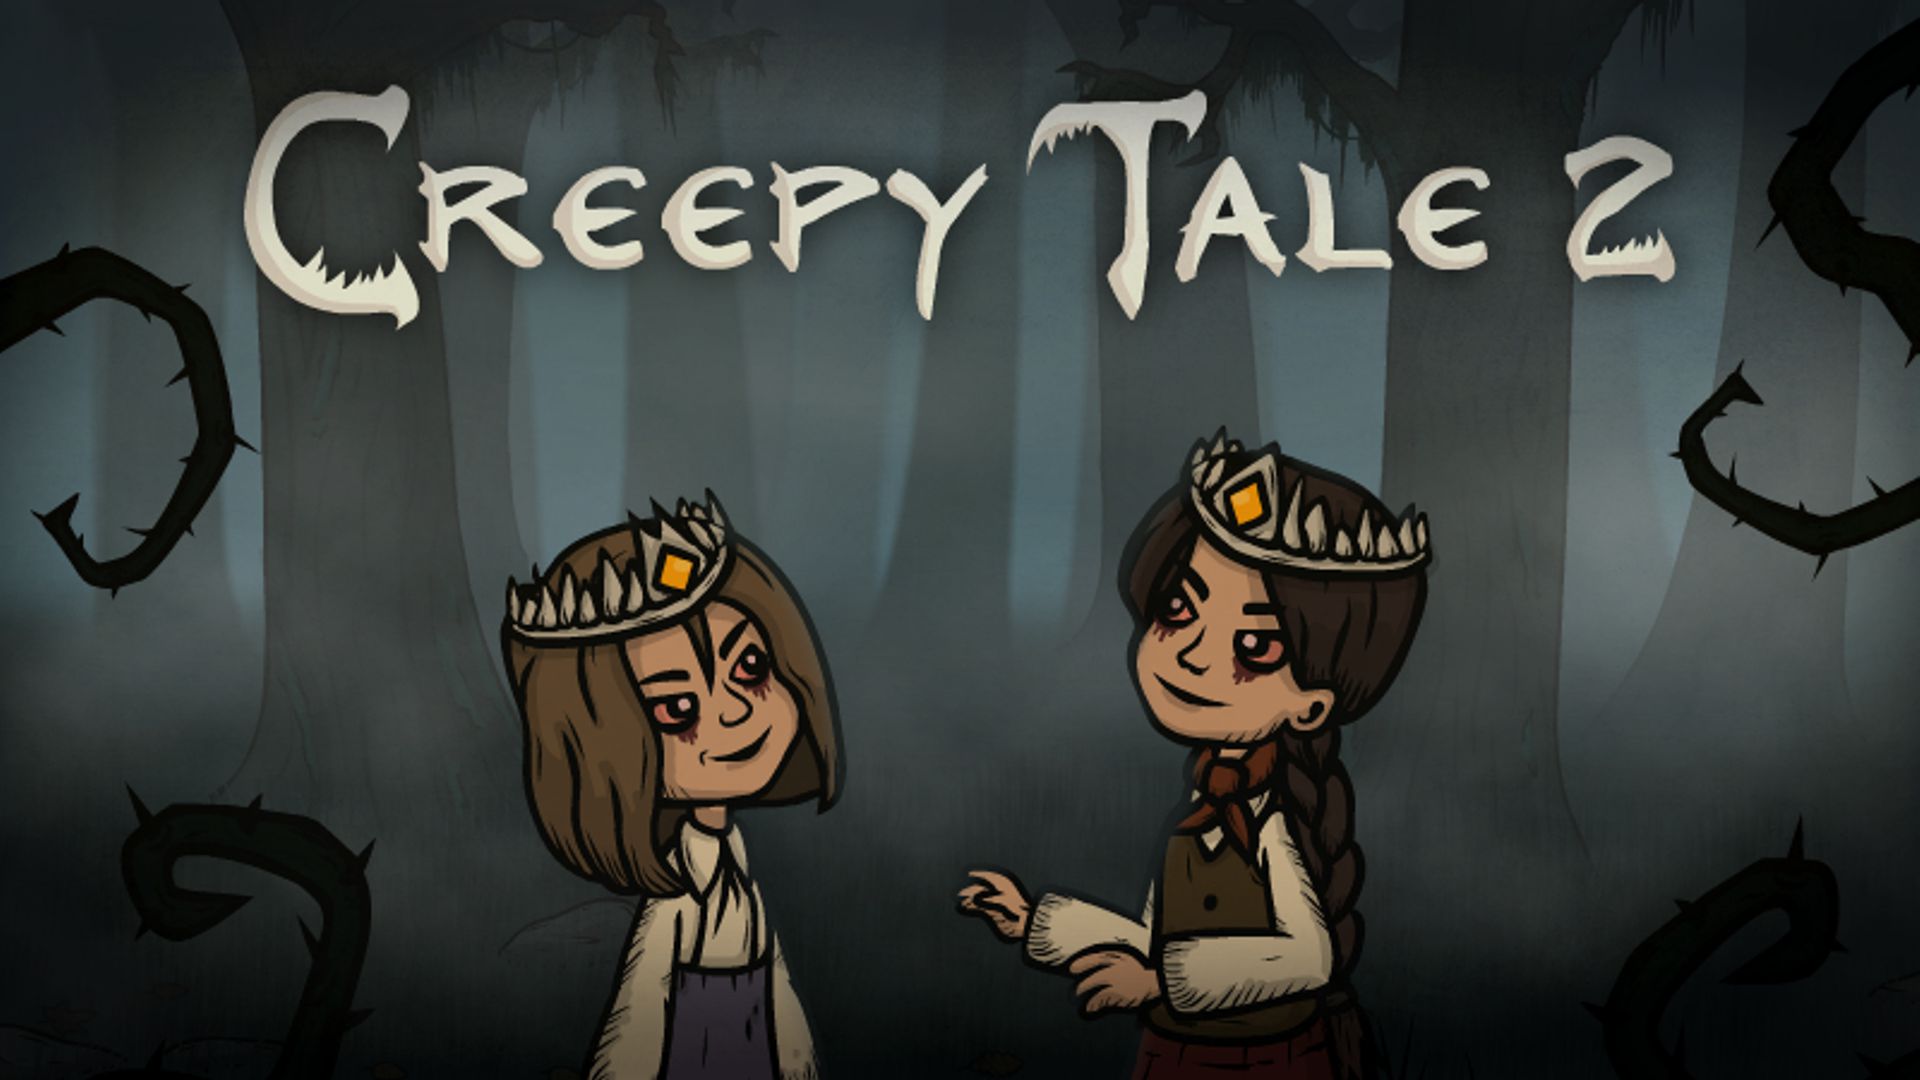 creepy tale 2 fanart